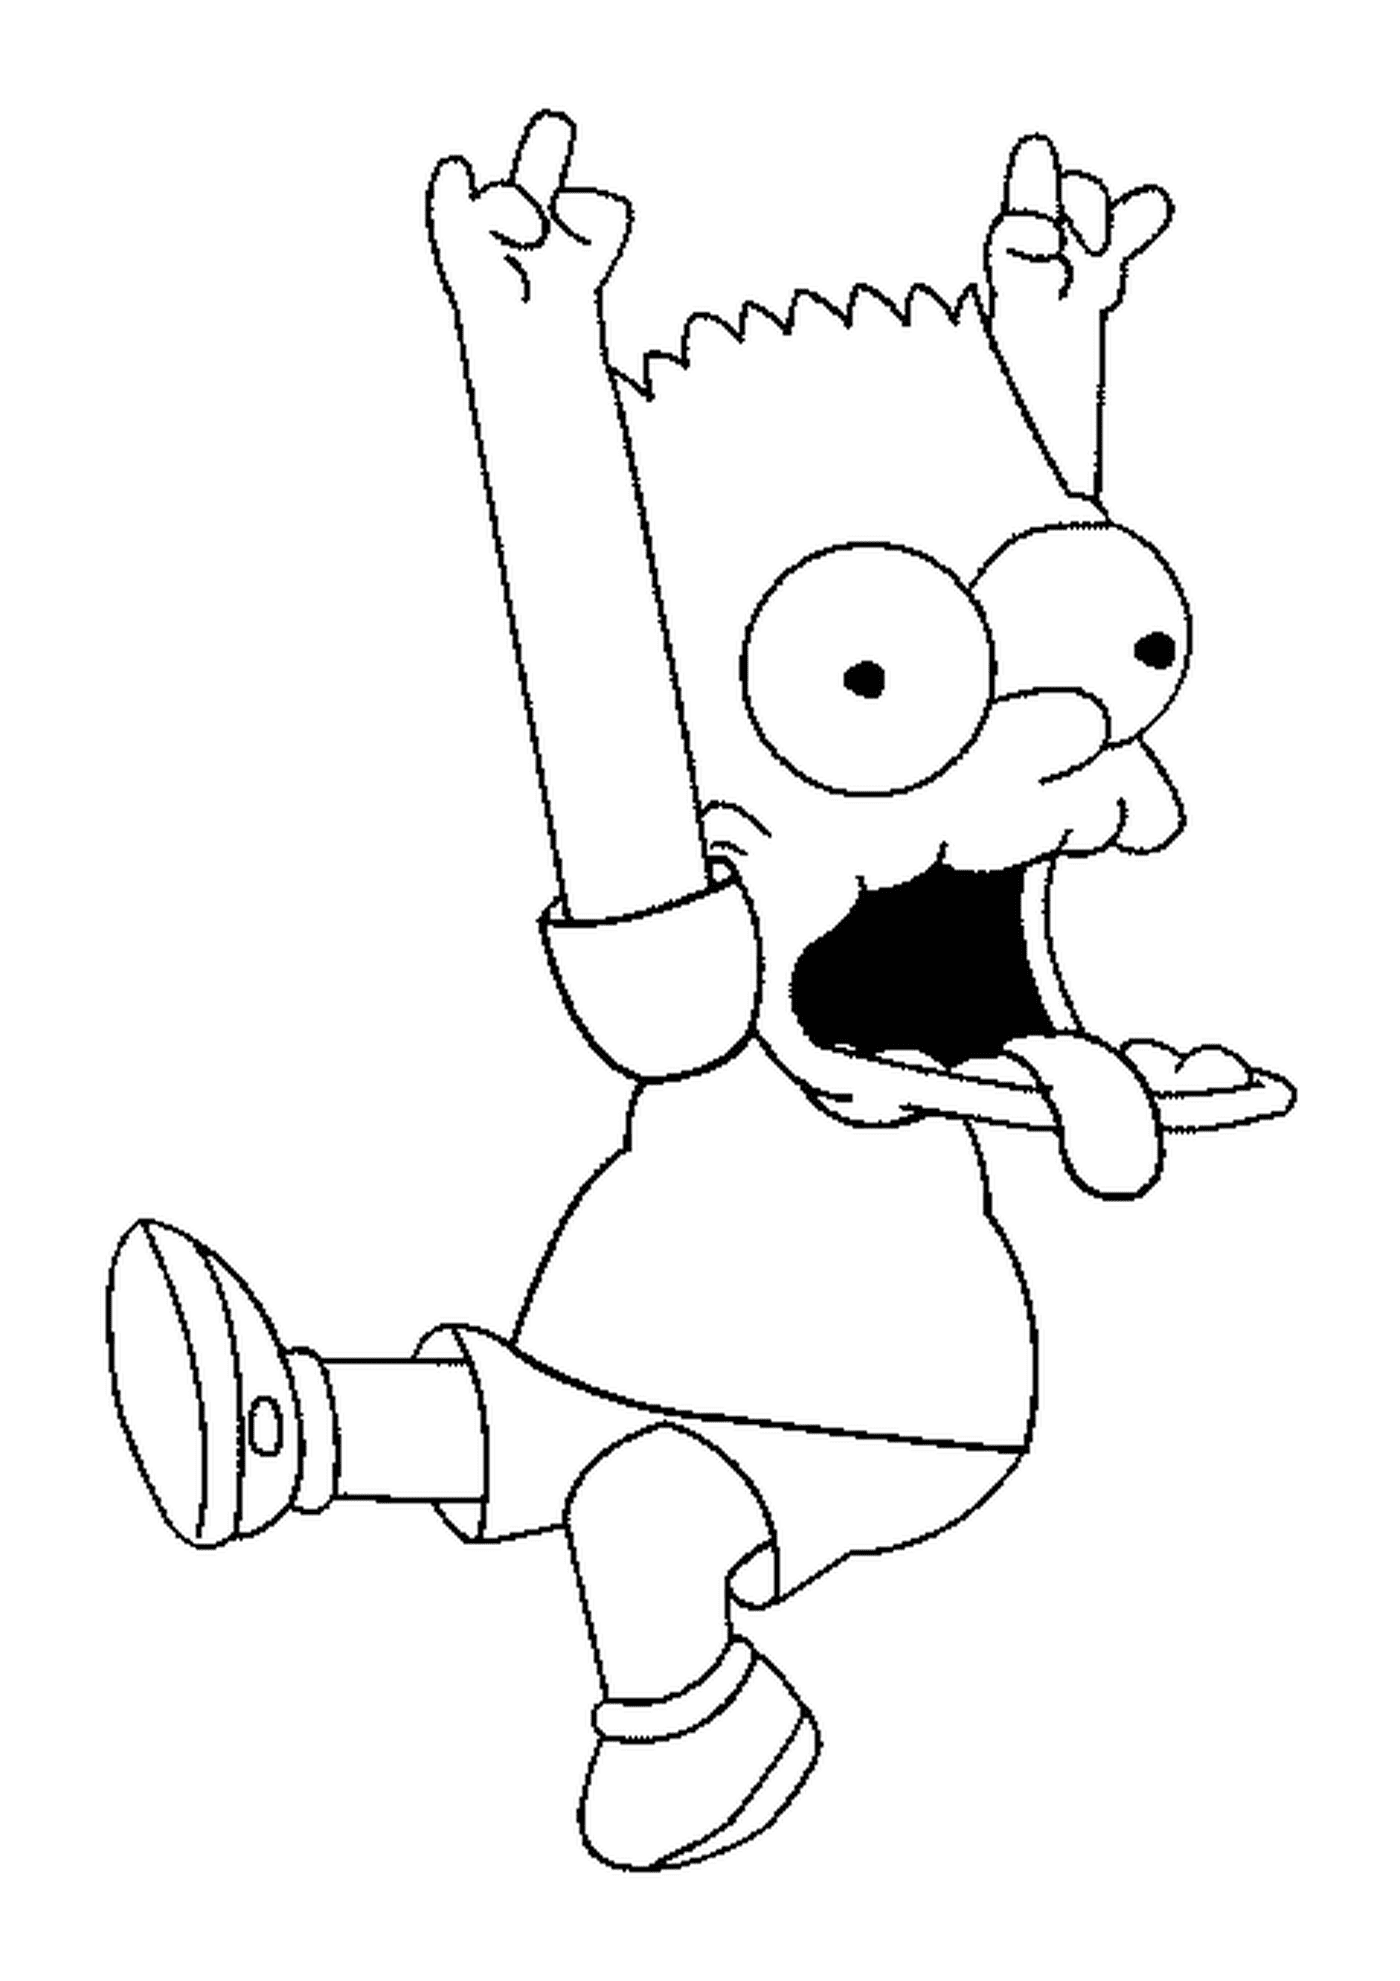  Bart hace una mueca con sus brazos en el aire 